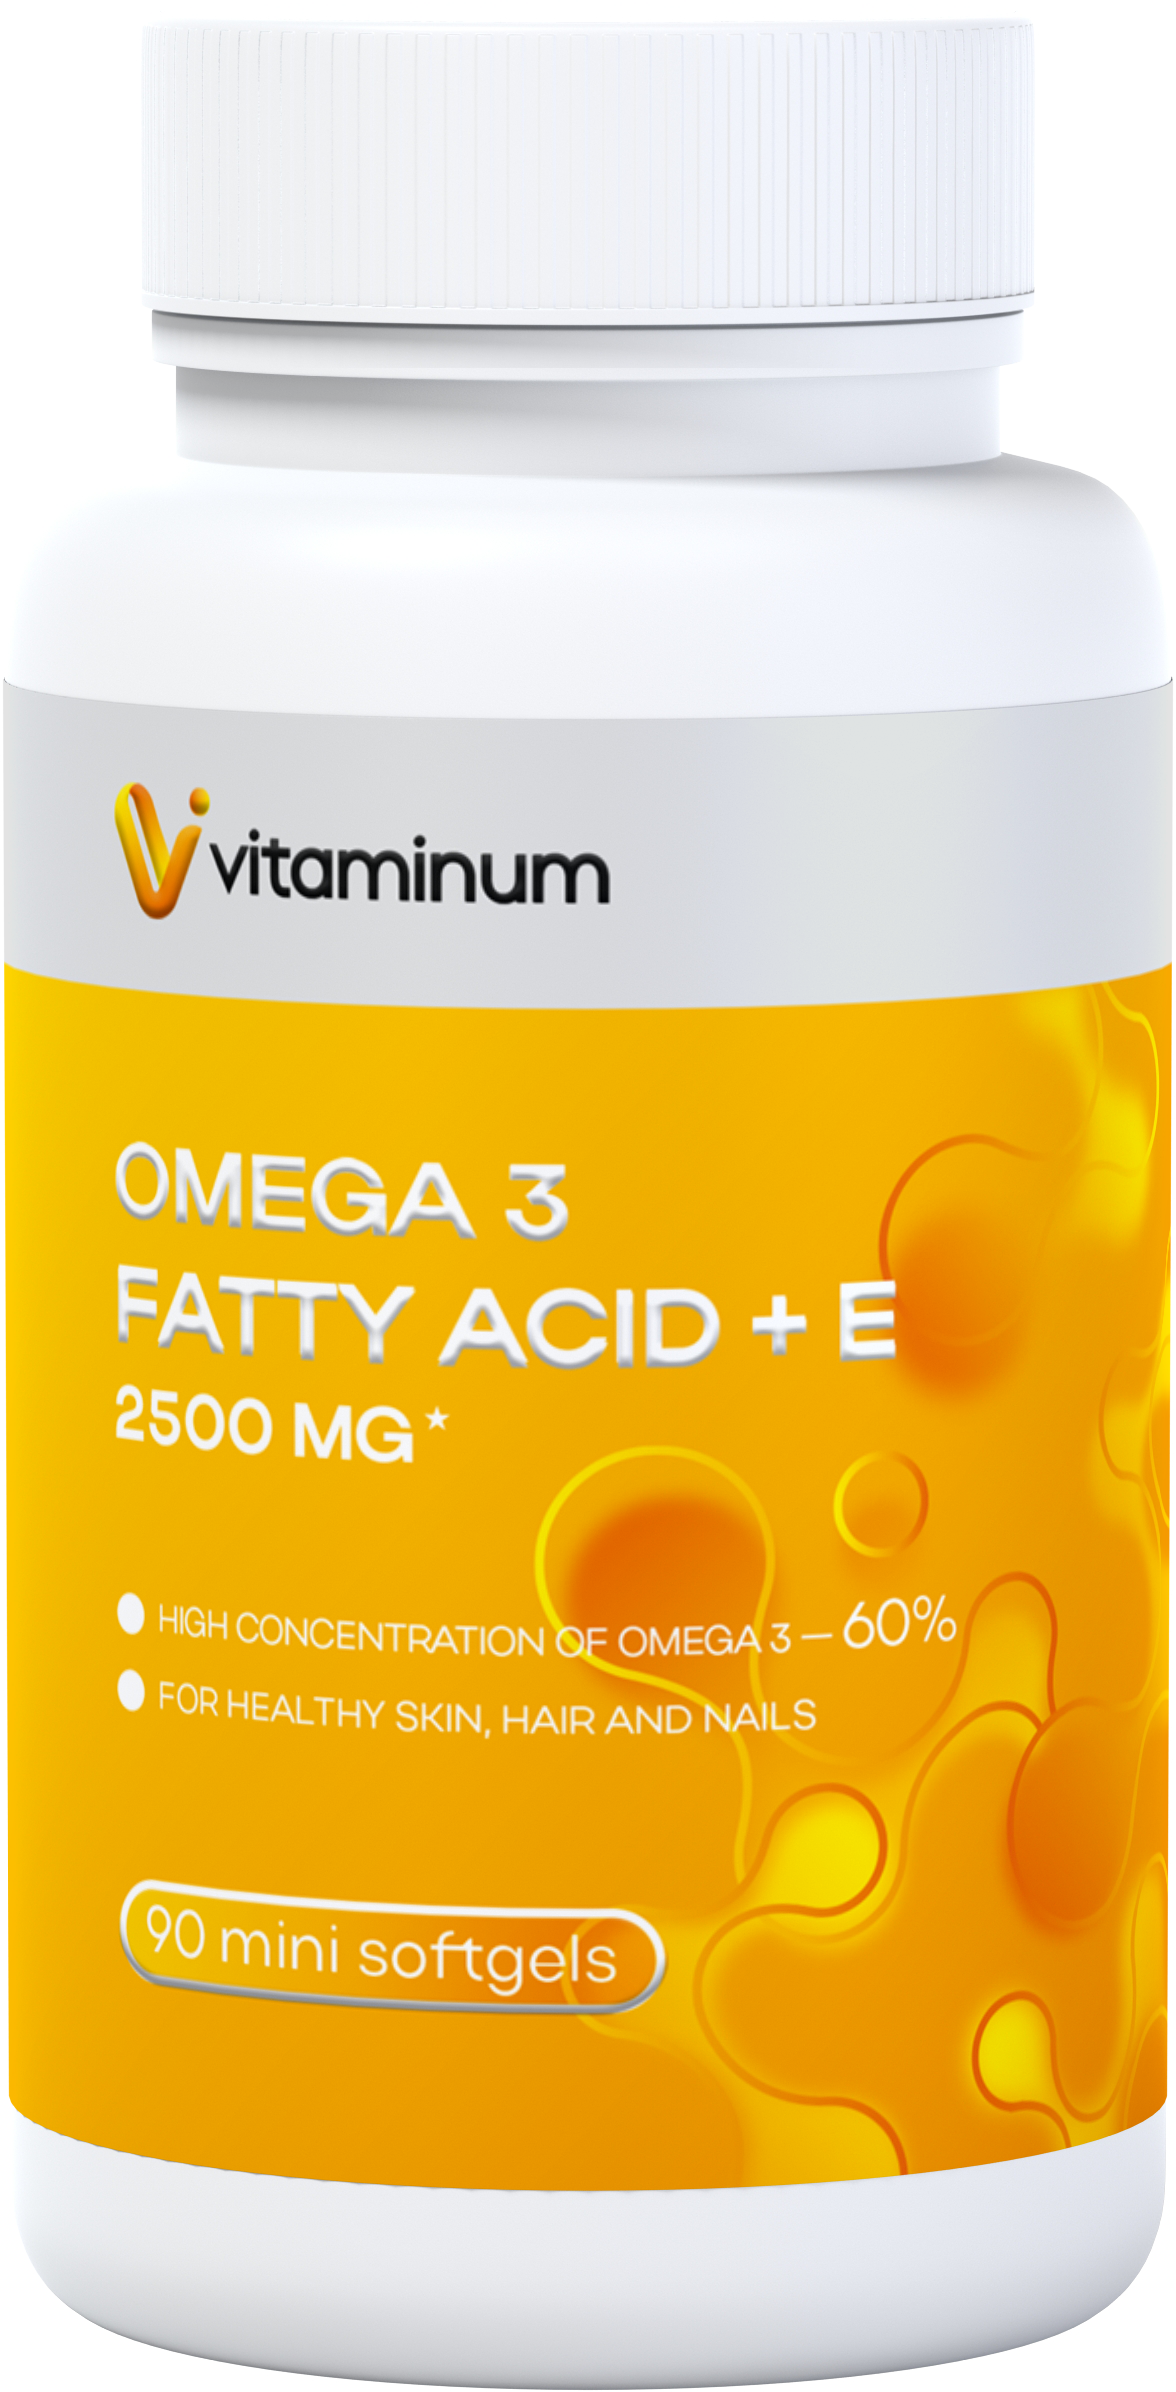  Vitaminum ОМЕГА 3 60% + витамин Е (2500 MG*) 90 капсул 700 мг   в Кропоткине